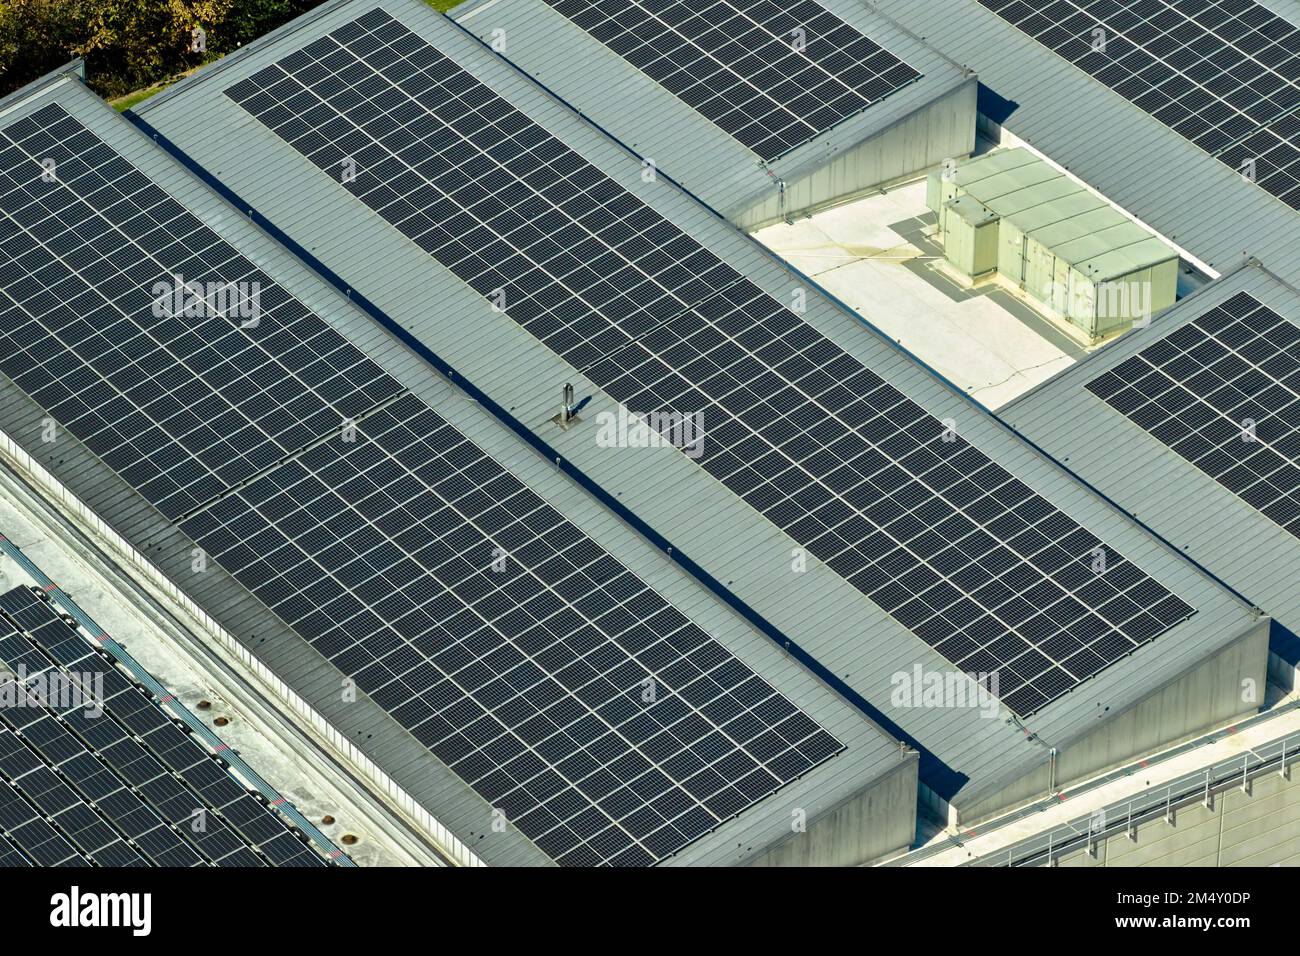 Luftaufnahme von blauen Photovoltaik-Solarmodulen, die auf dem Dach eines Industriegebäudes montiert sind, um ökologischen Ökostrom zu erzeugen. Produktion von Sustainabl Stockfoto